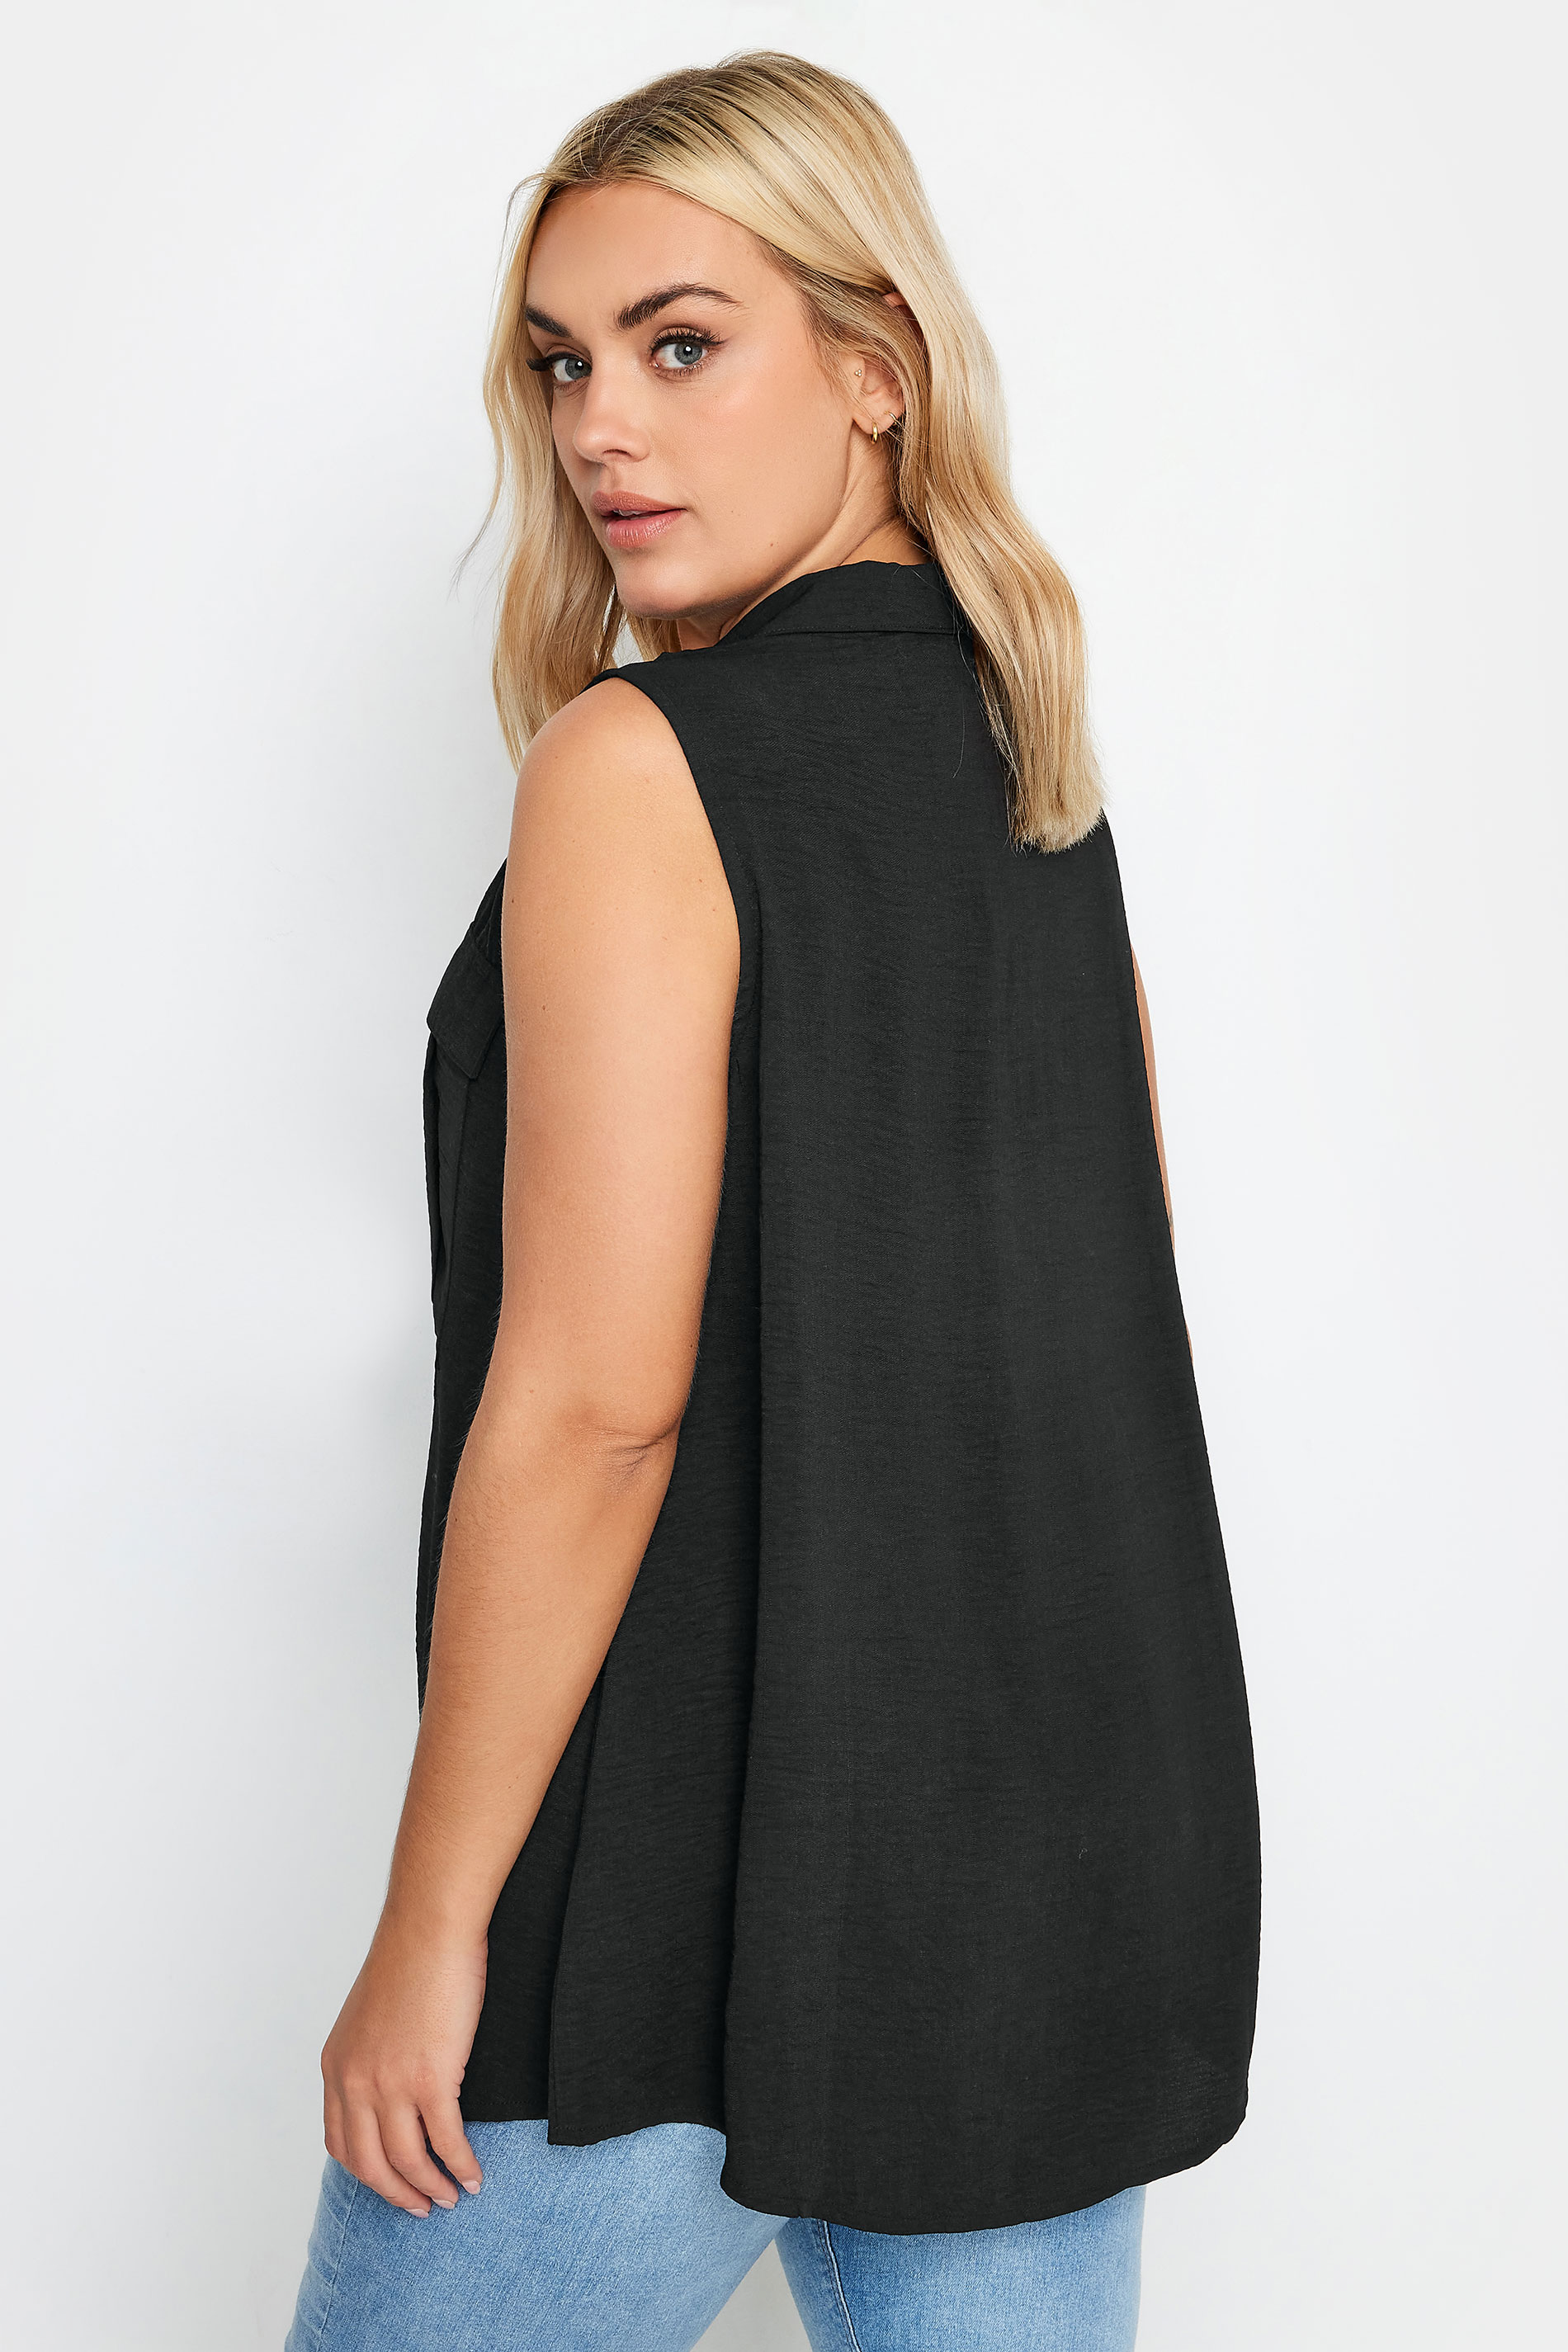 YOURS Plus Size Black Sleeveless Utility Shirt | Yours Clothing 3